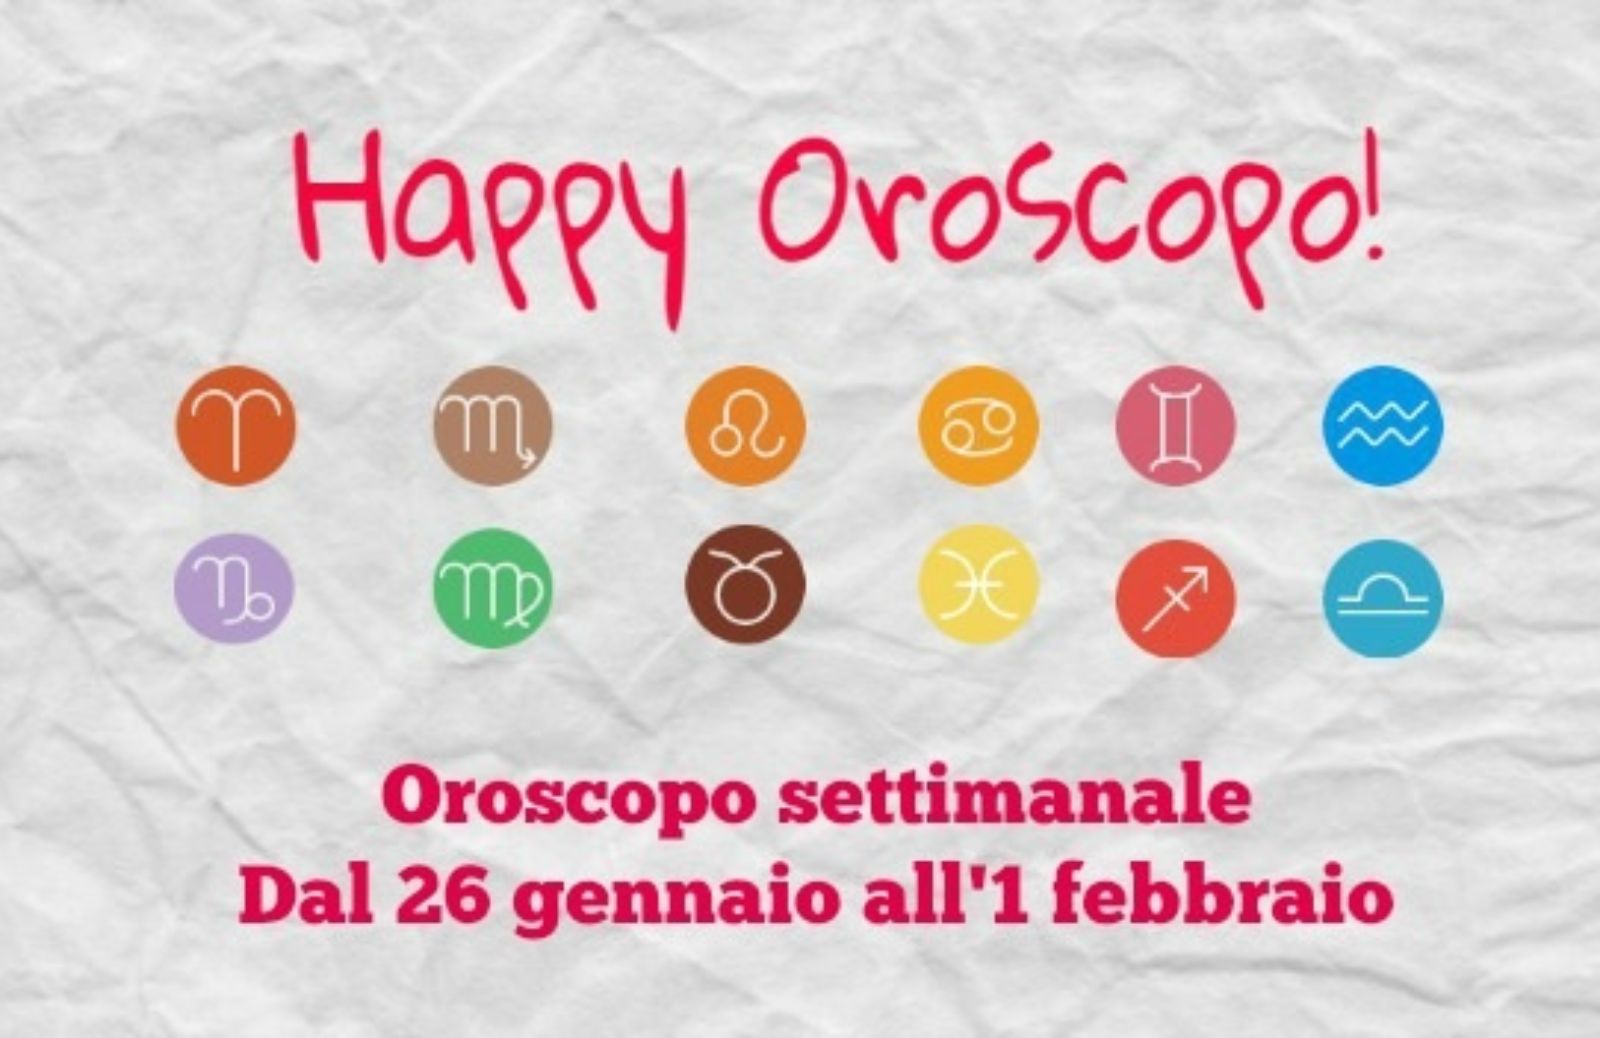 Happy Oroscopo della settimana: cosa dicono le stelle dal 26 gennaio all'1 febbraio segno per segno